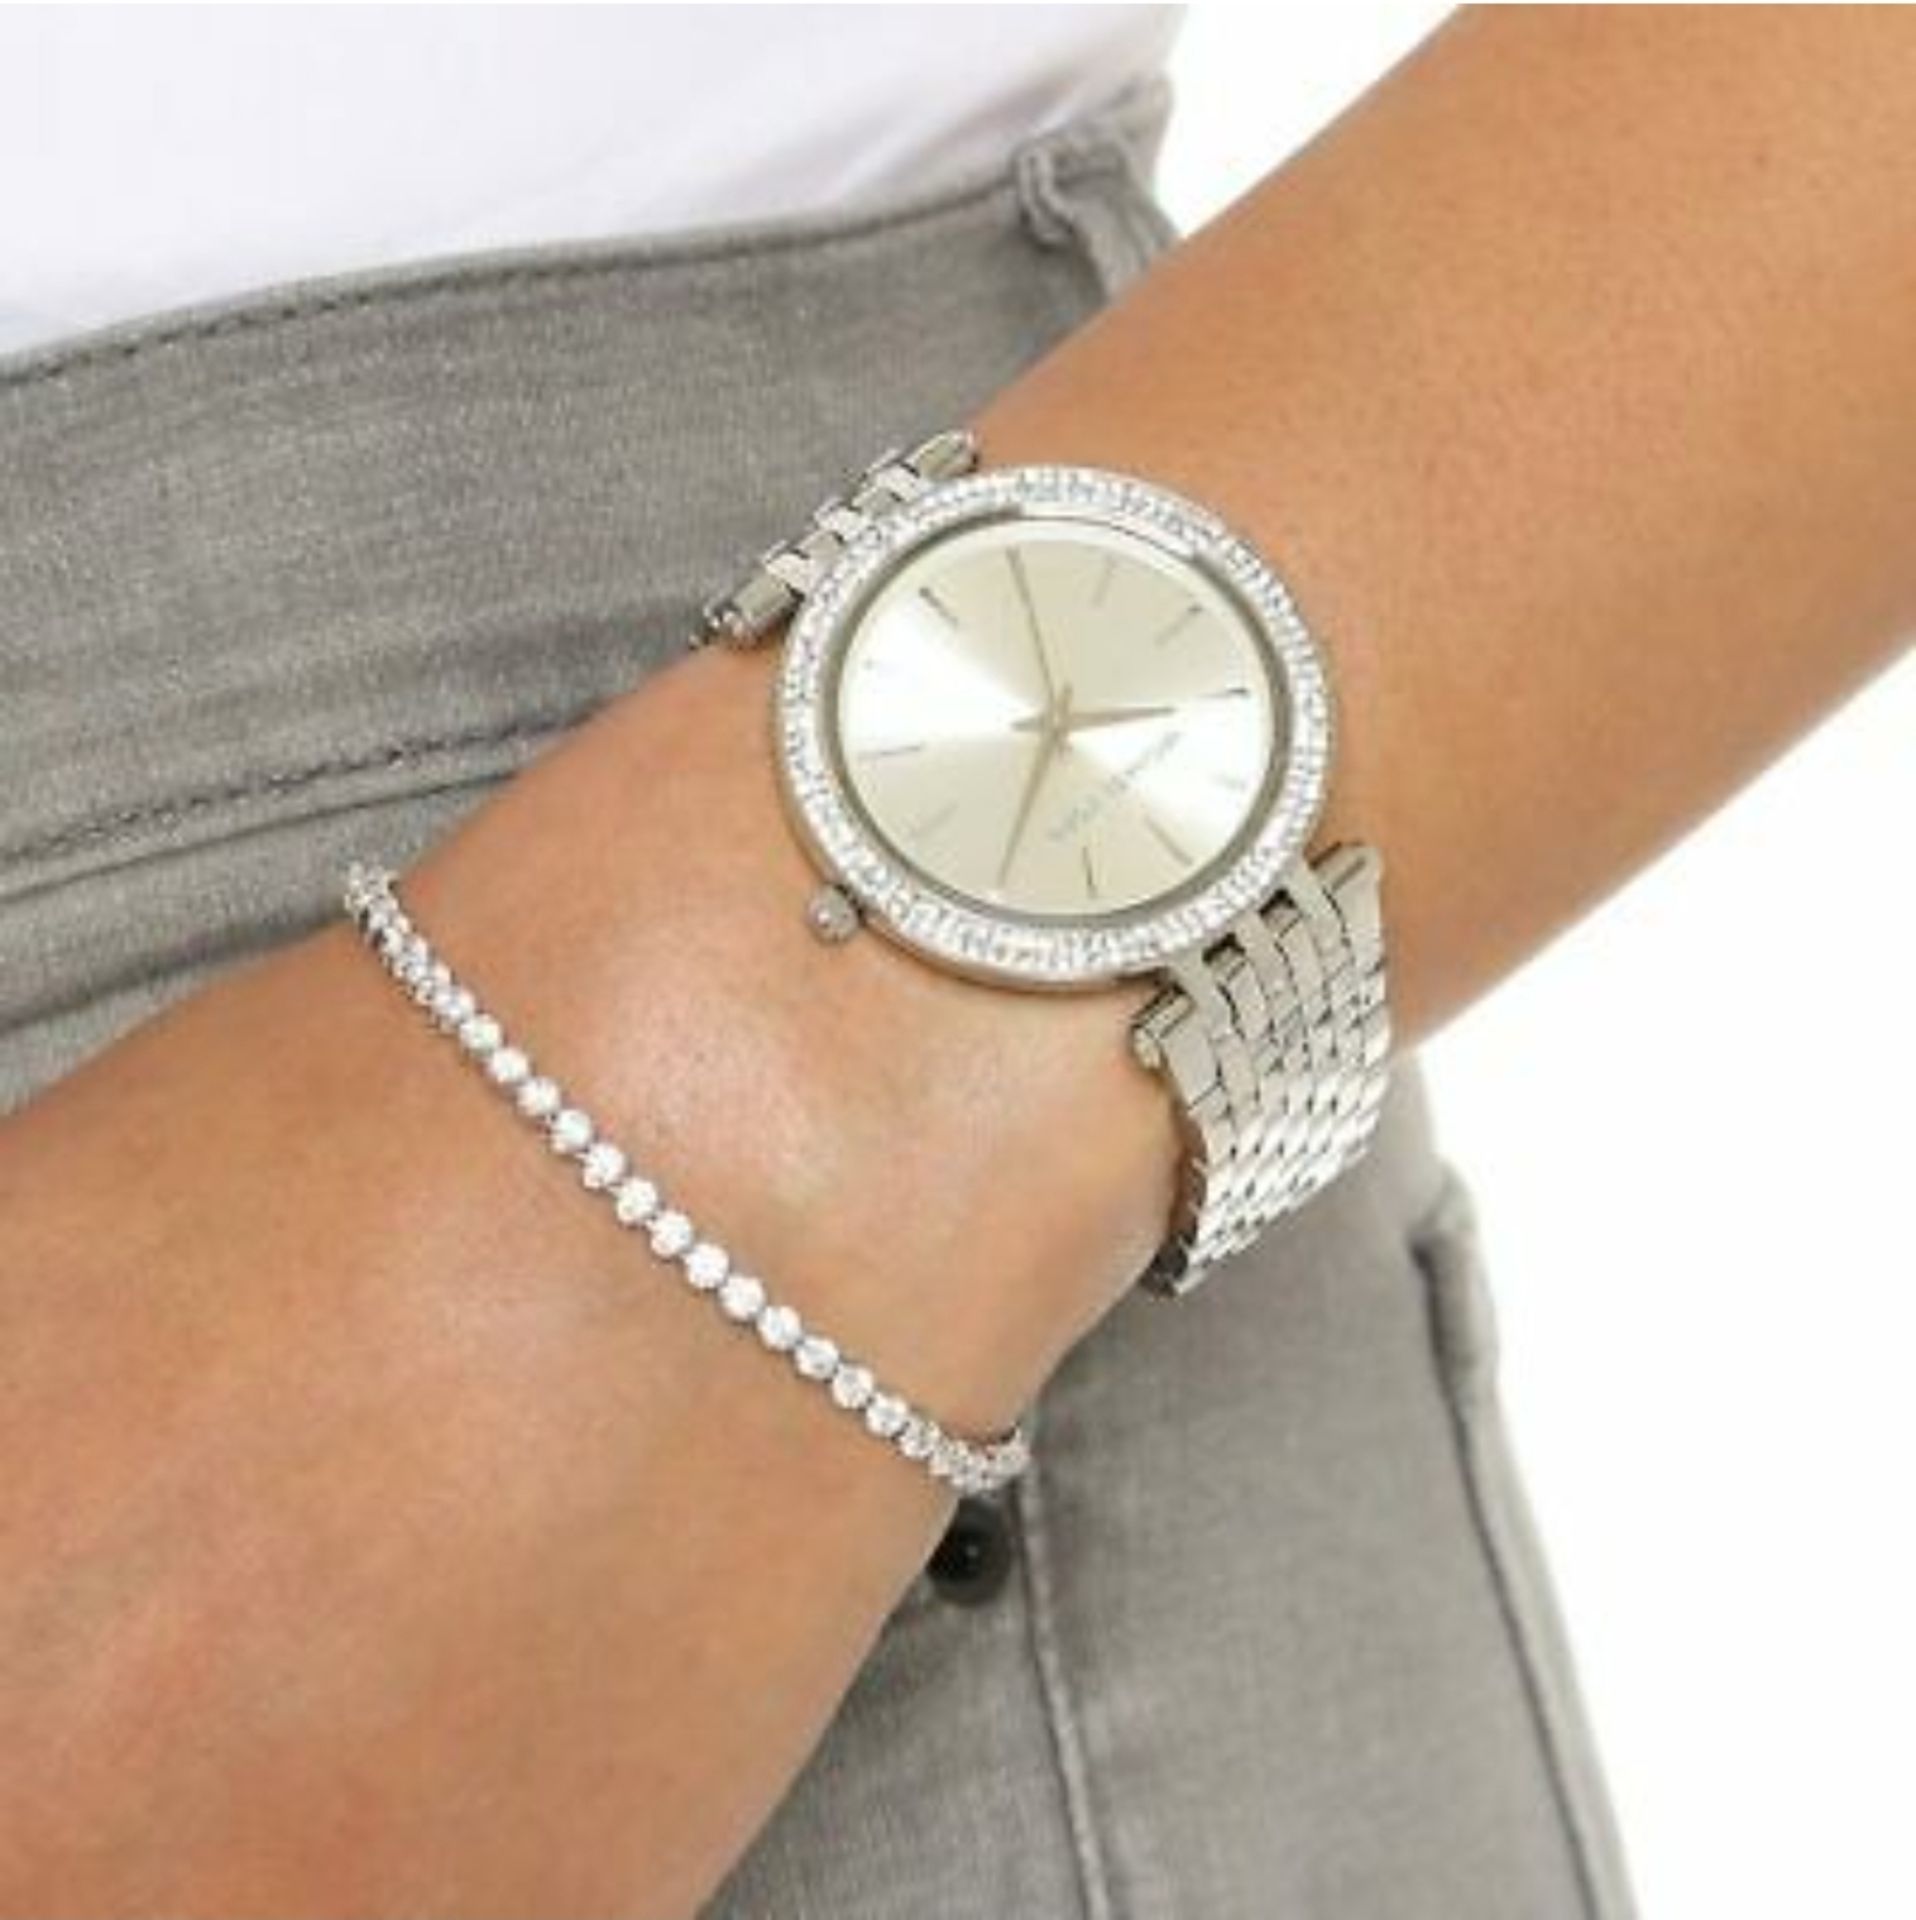 Michael Kors MK3190 Darci Silver Ladies Watch - Image 4 of 8